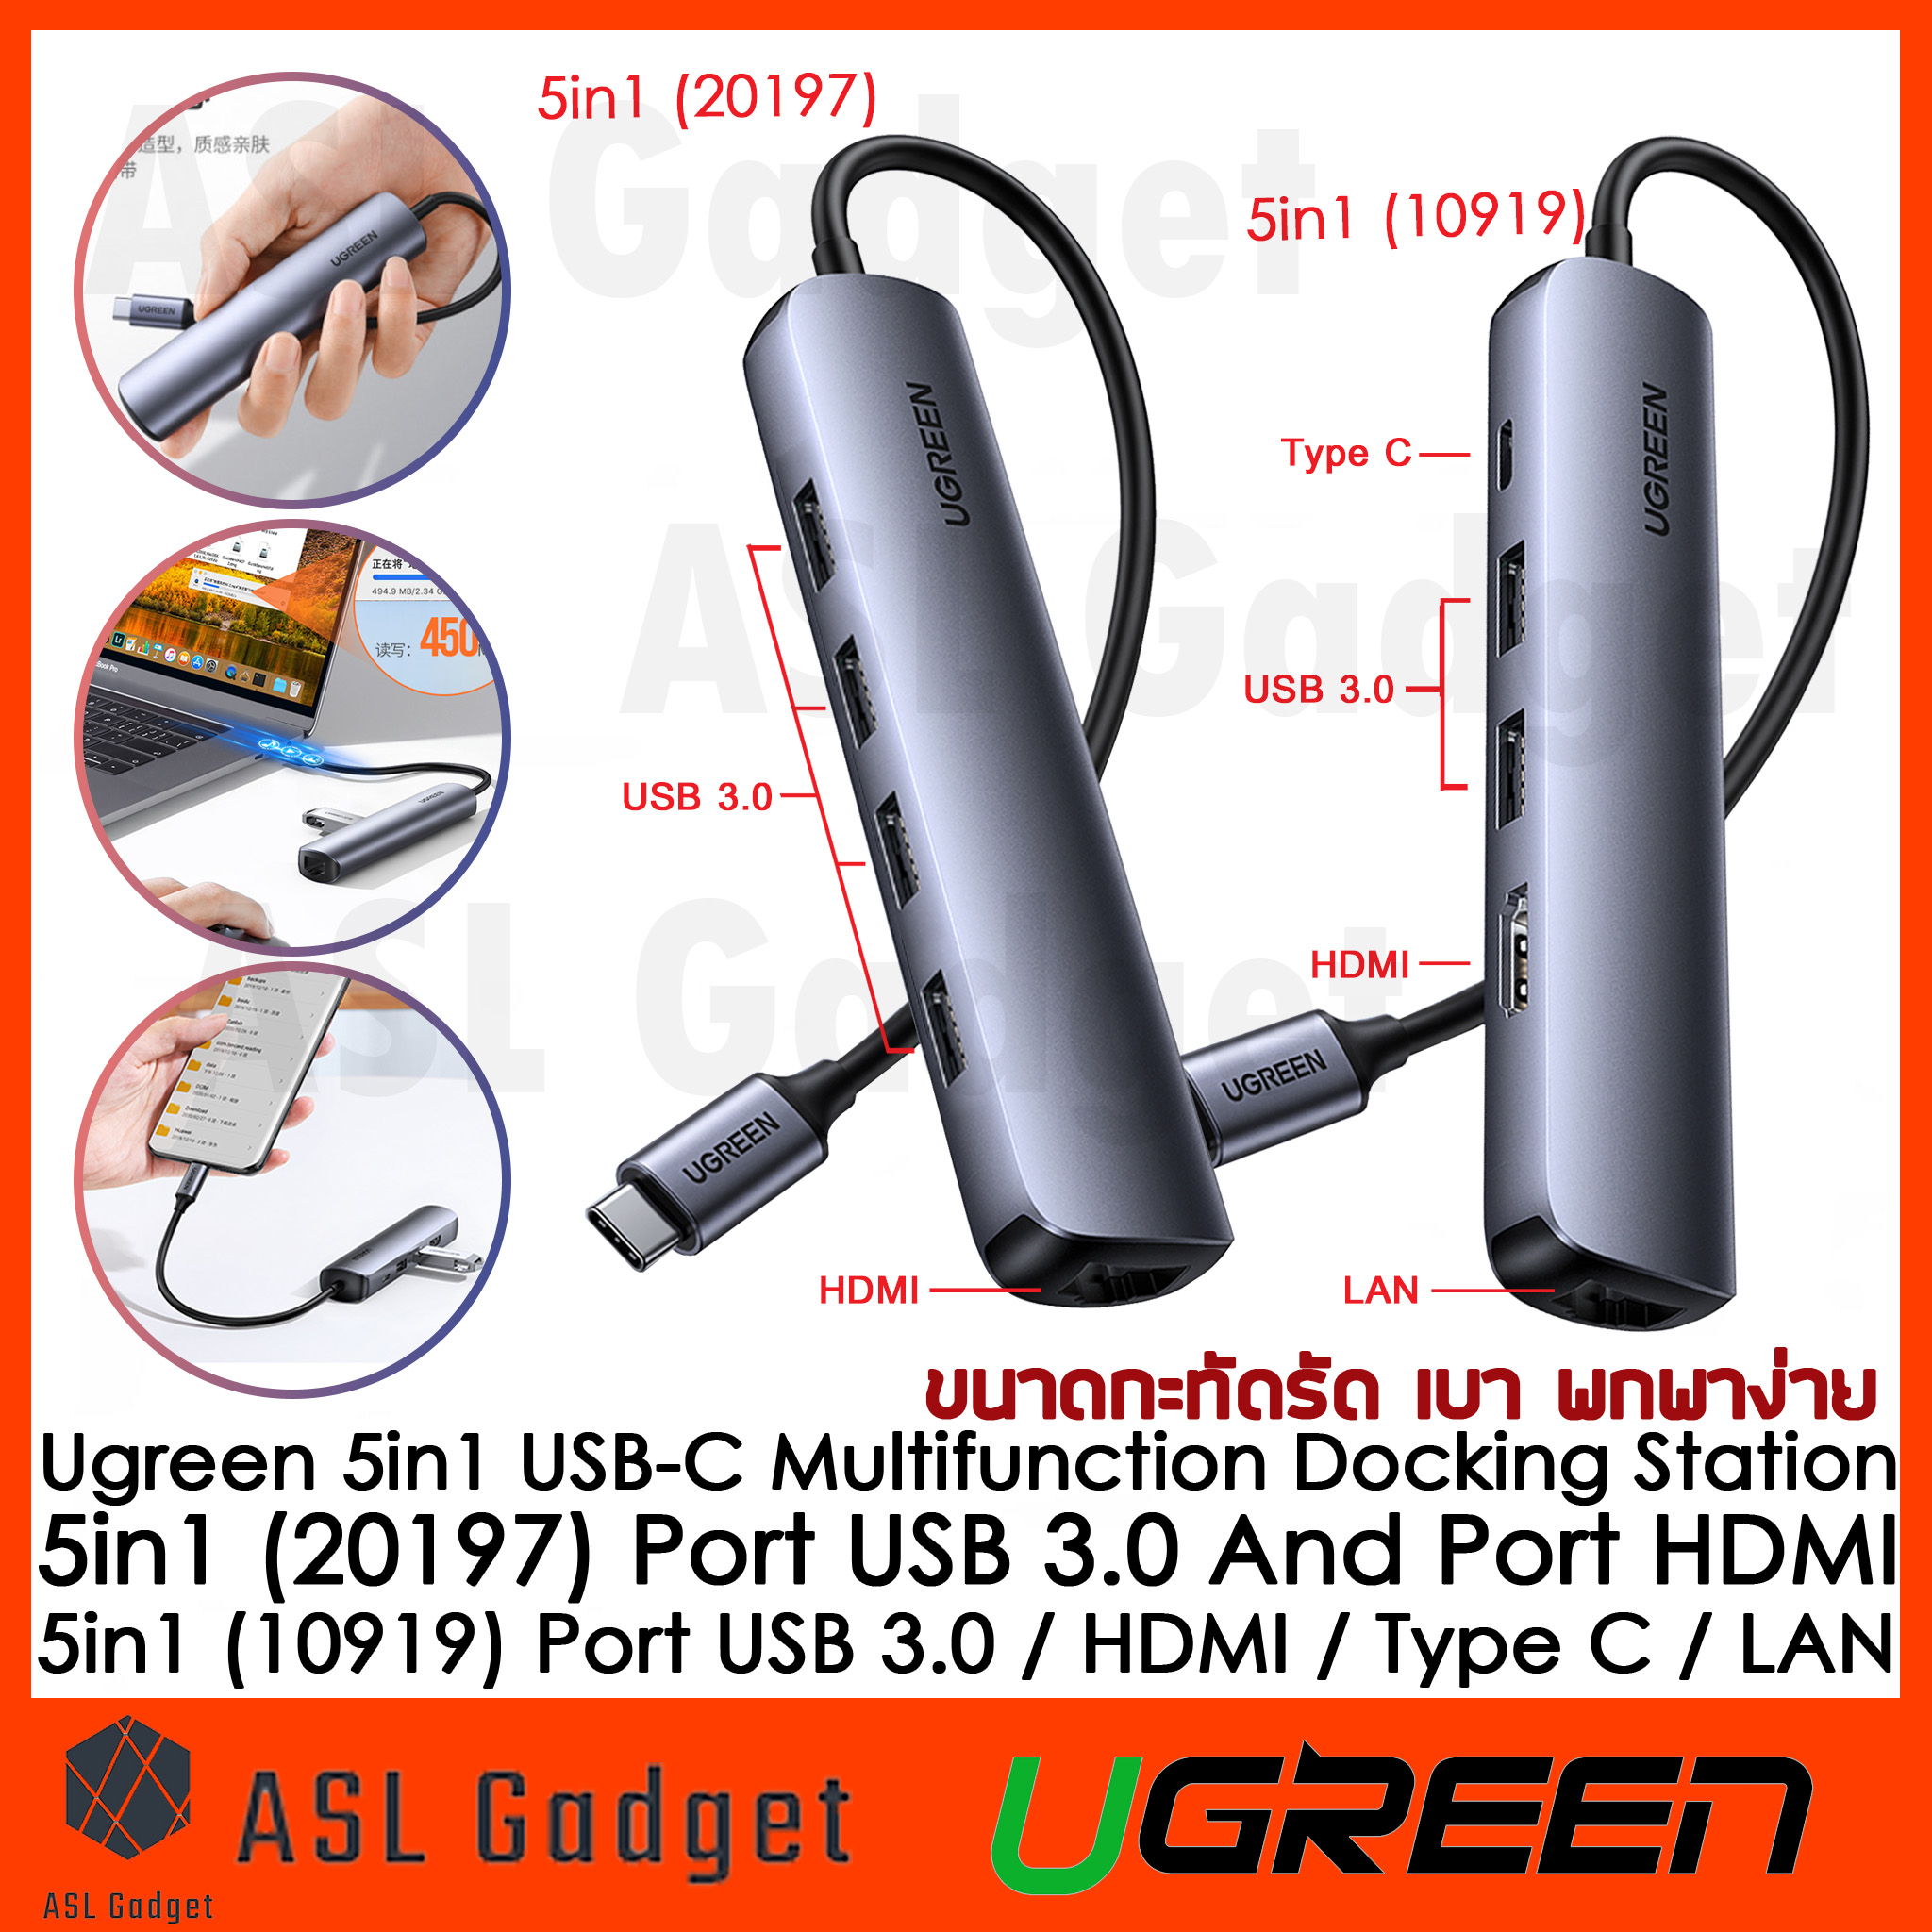 Ugreen Hub 5 in 1 Port USB-C / USB 3.0 / HDMI 4K30Hz / LAN Gigabit 10/100/1000 Mbps ขนาดเล็ก กะทัดรัด พกพาง่าย